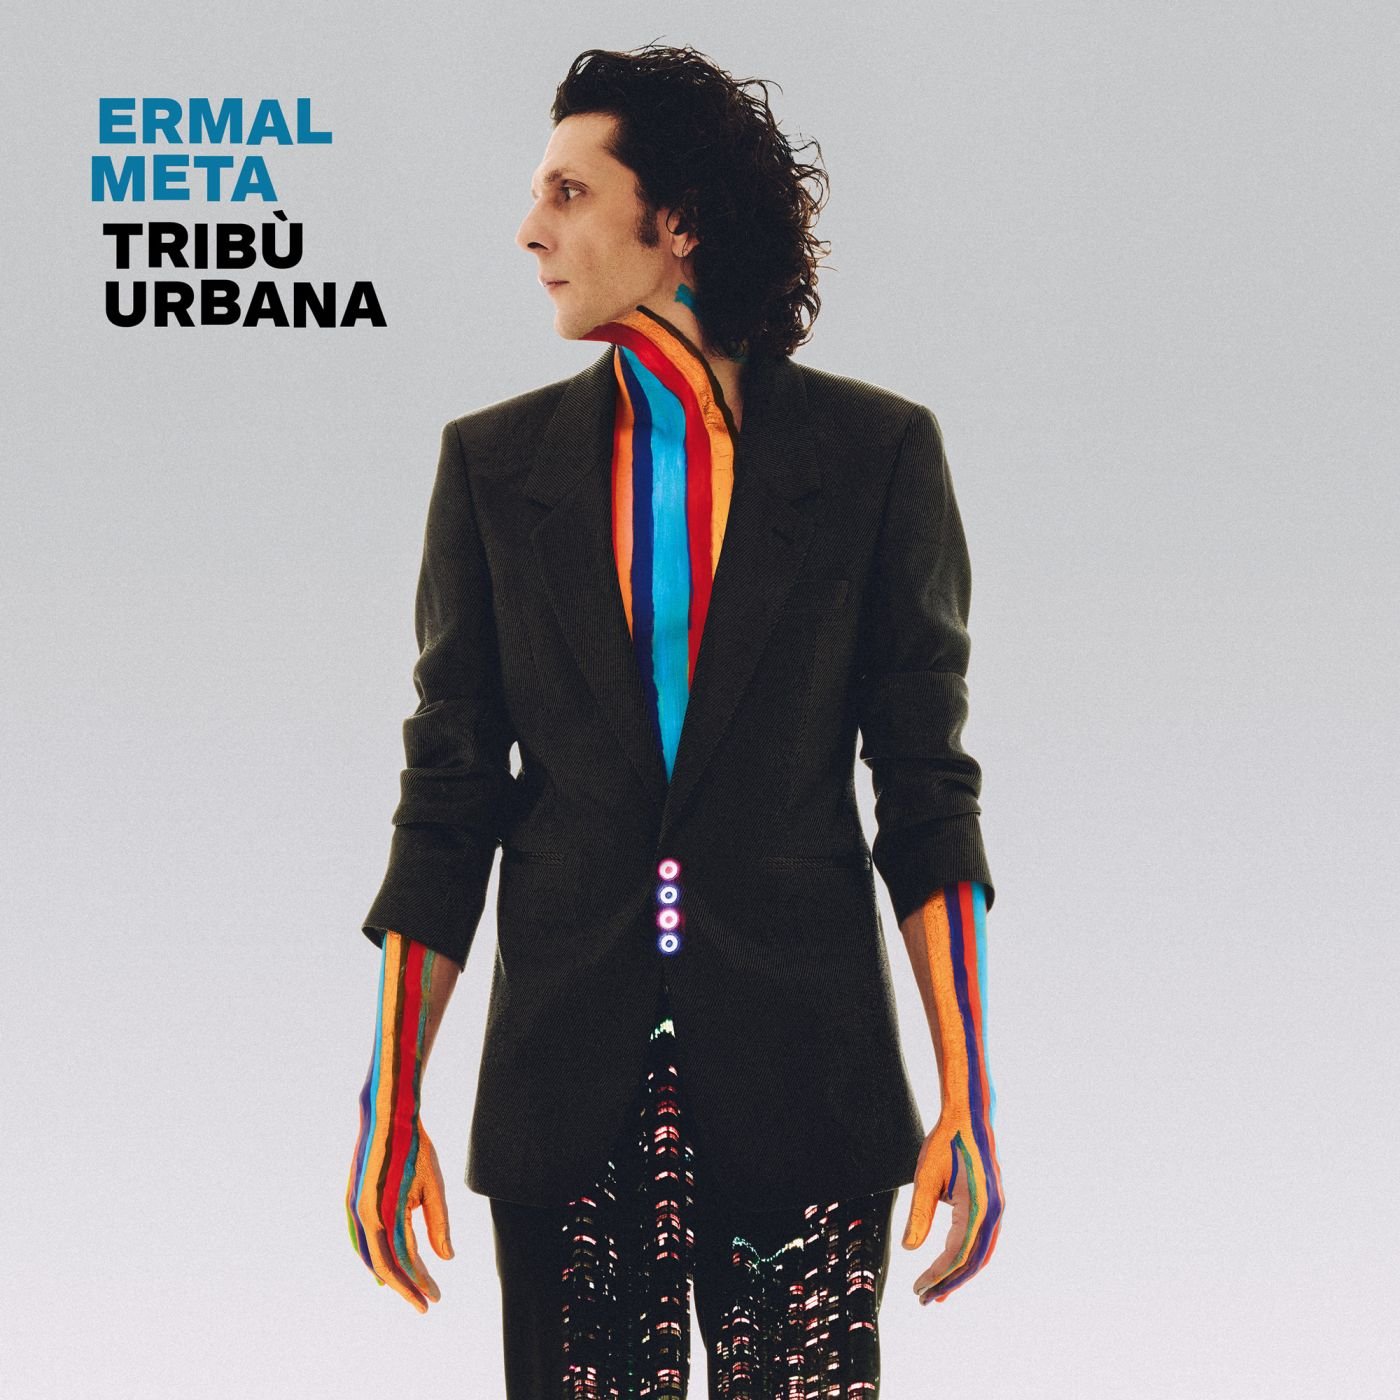 Il 12 marzo esce “Tribù Urbana”, il nuovo album di Ermal Meta